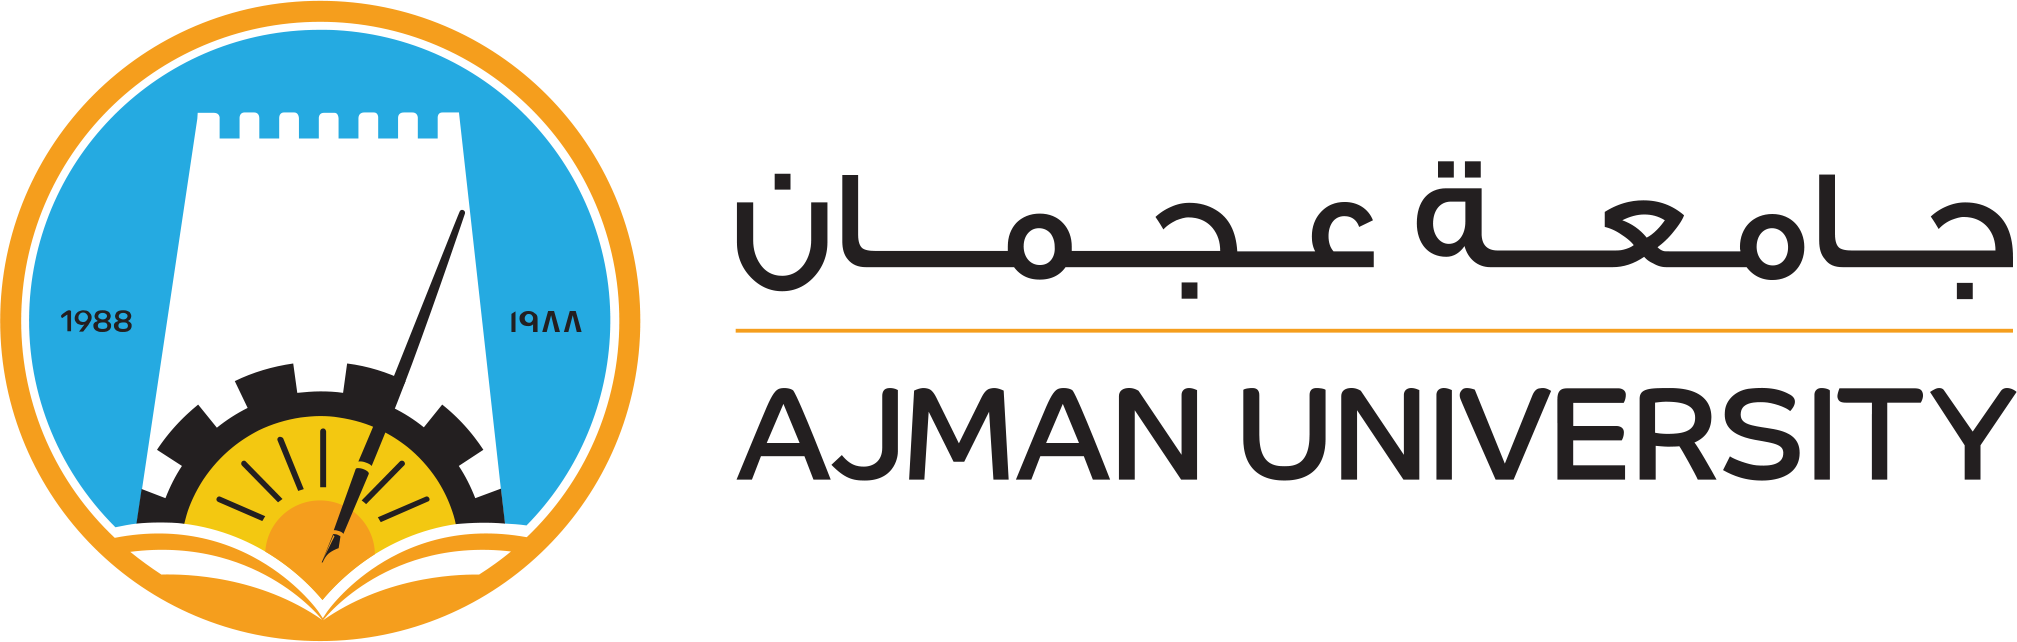 Ajman_logo_login.png